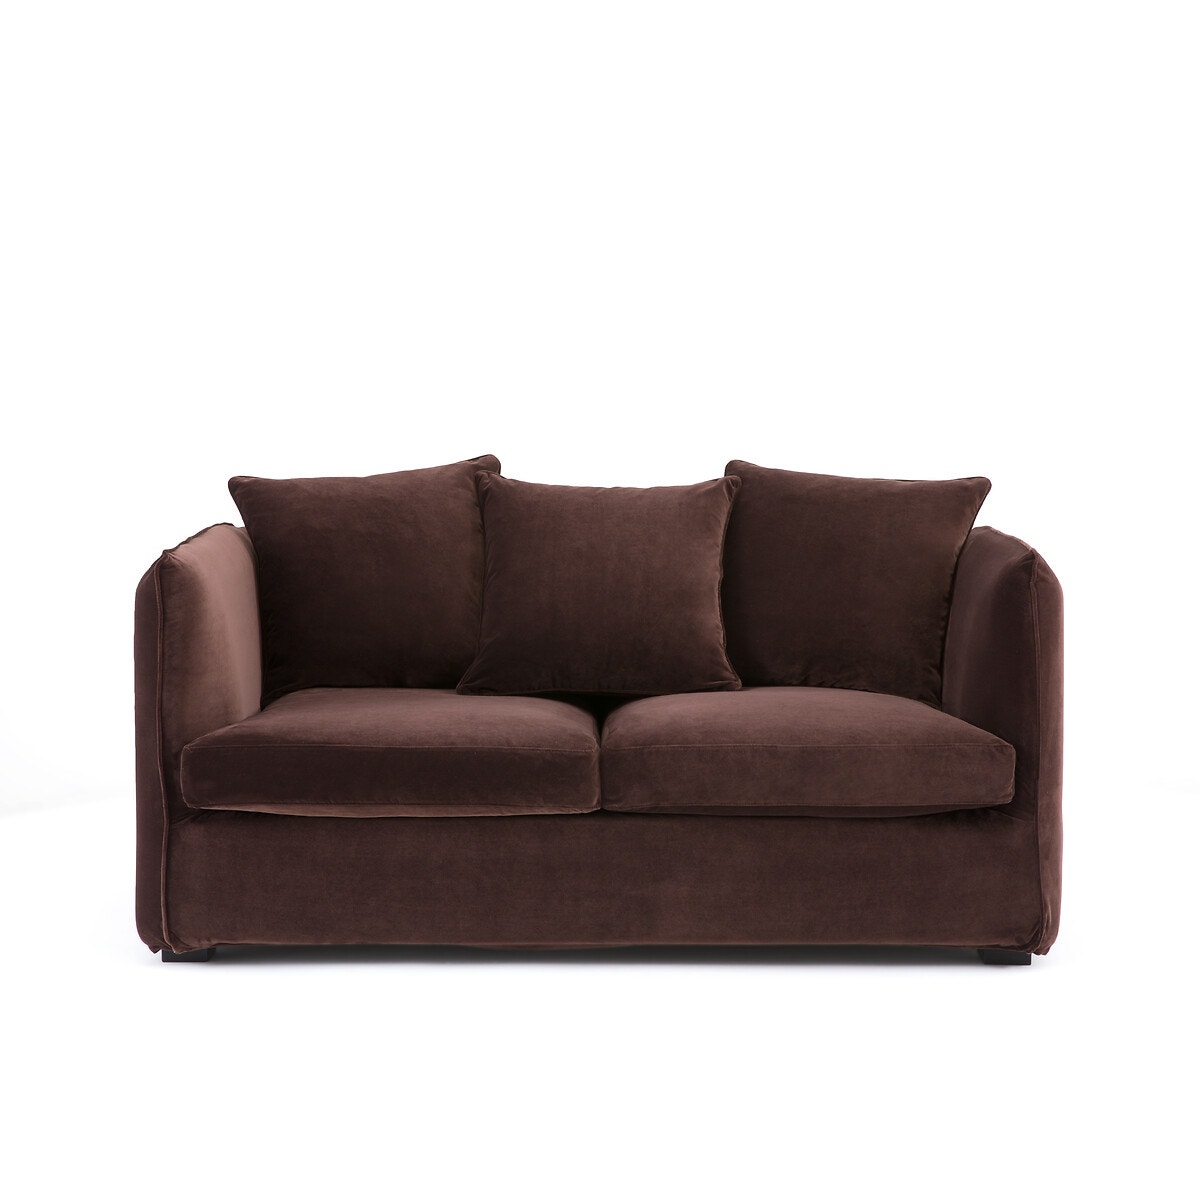 Διθέσιος καναπές από βελούδο, Néo Chiquito